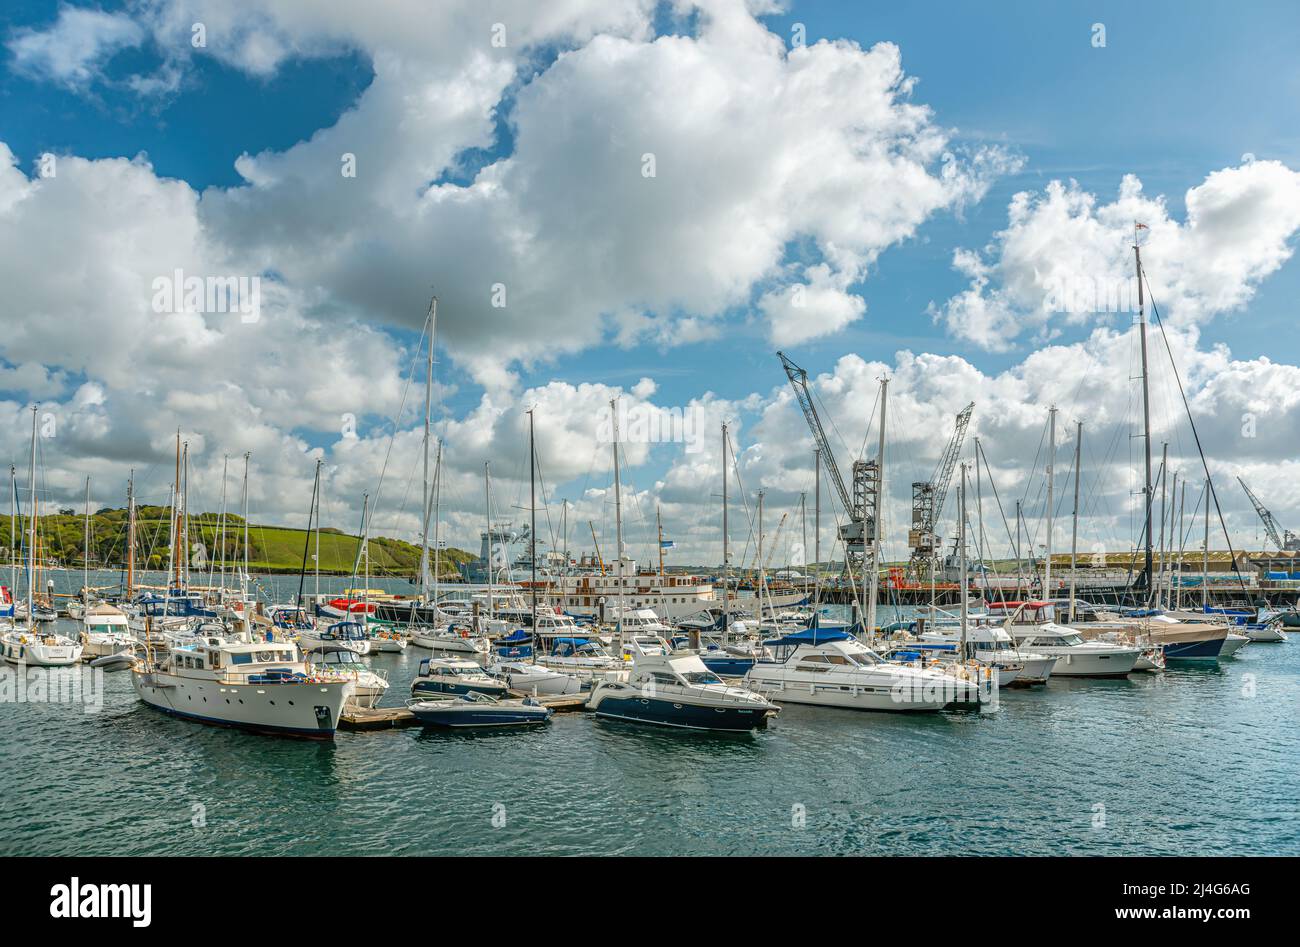 Sailing ship at the marina of Falmouth, Cornwall, England, UK Stock Photo